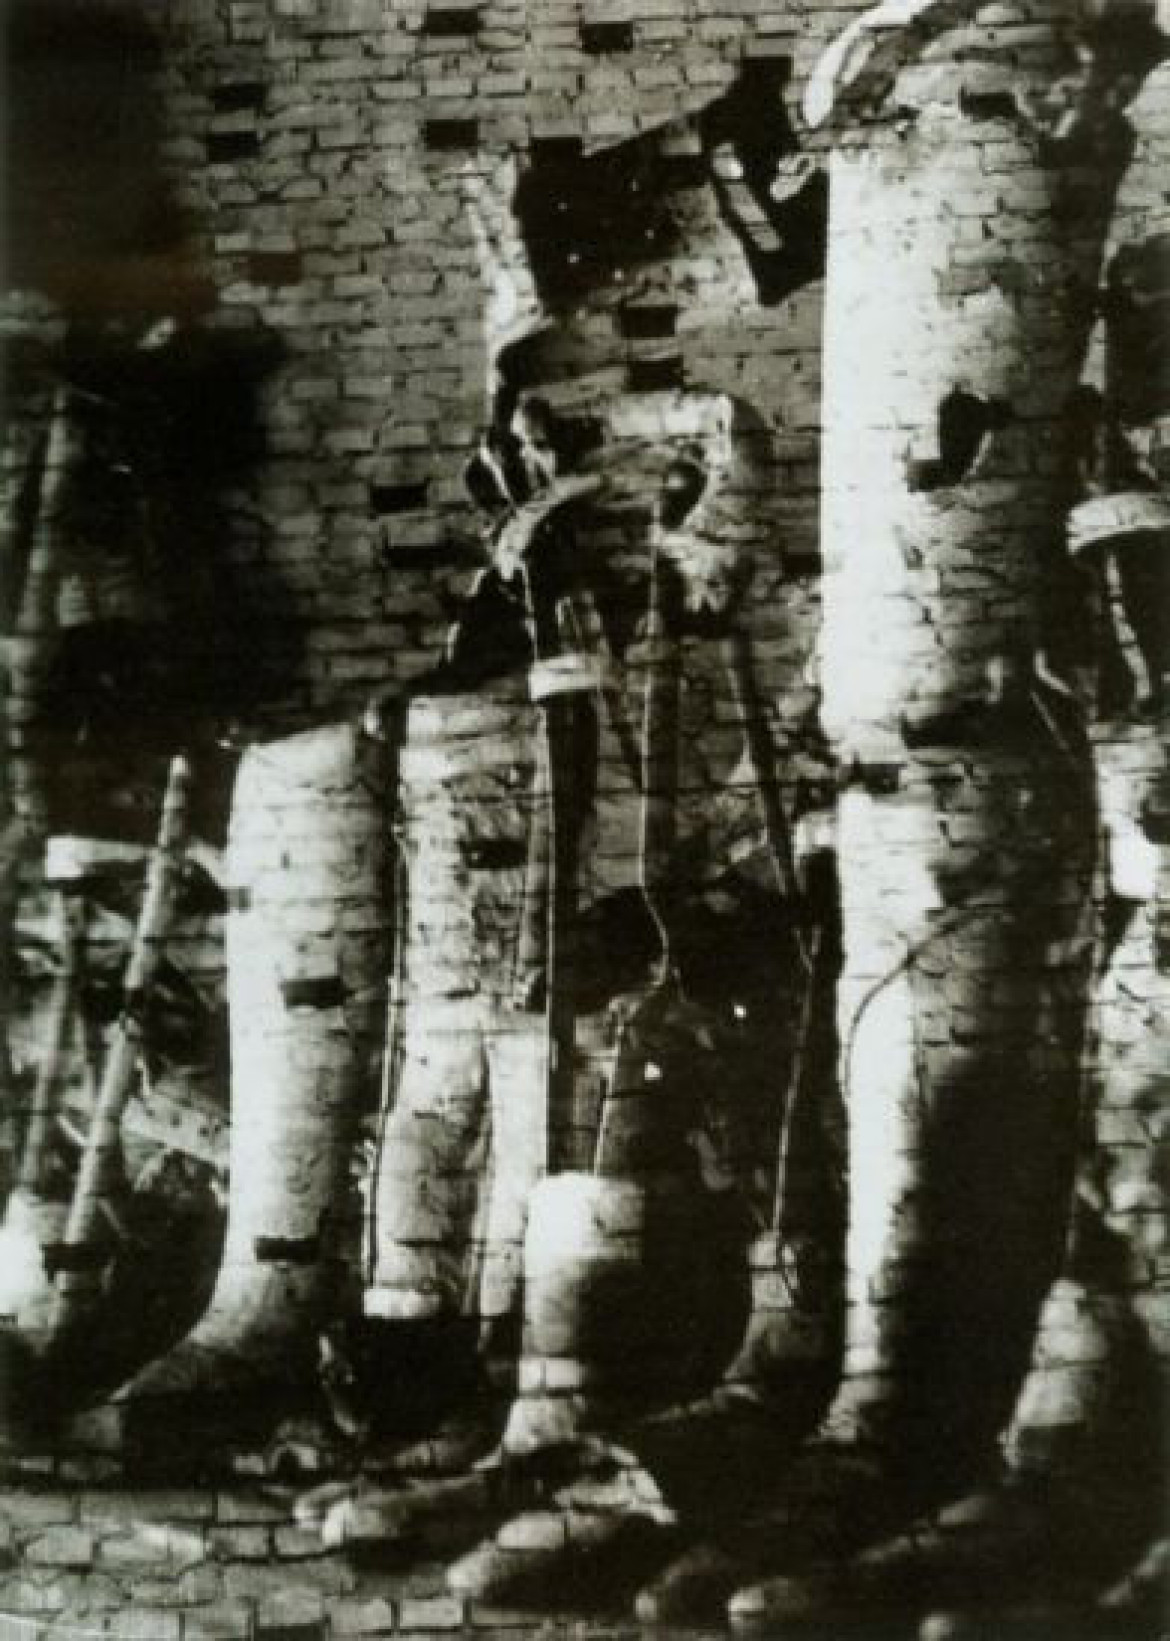 fot. Jerzy Lewczyński, Baczność, fotomontaż negatywowy, 1958